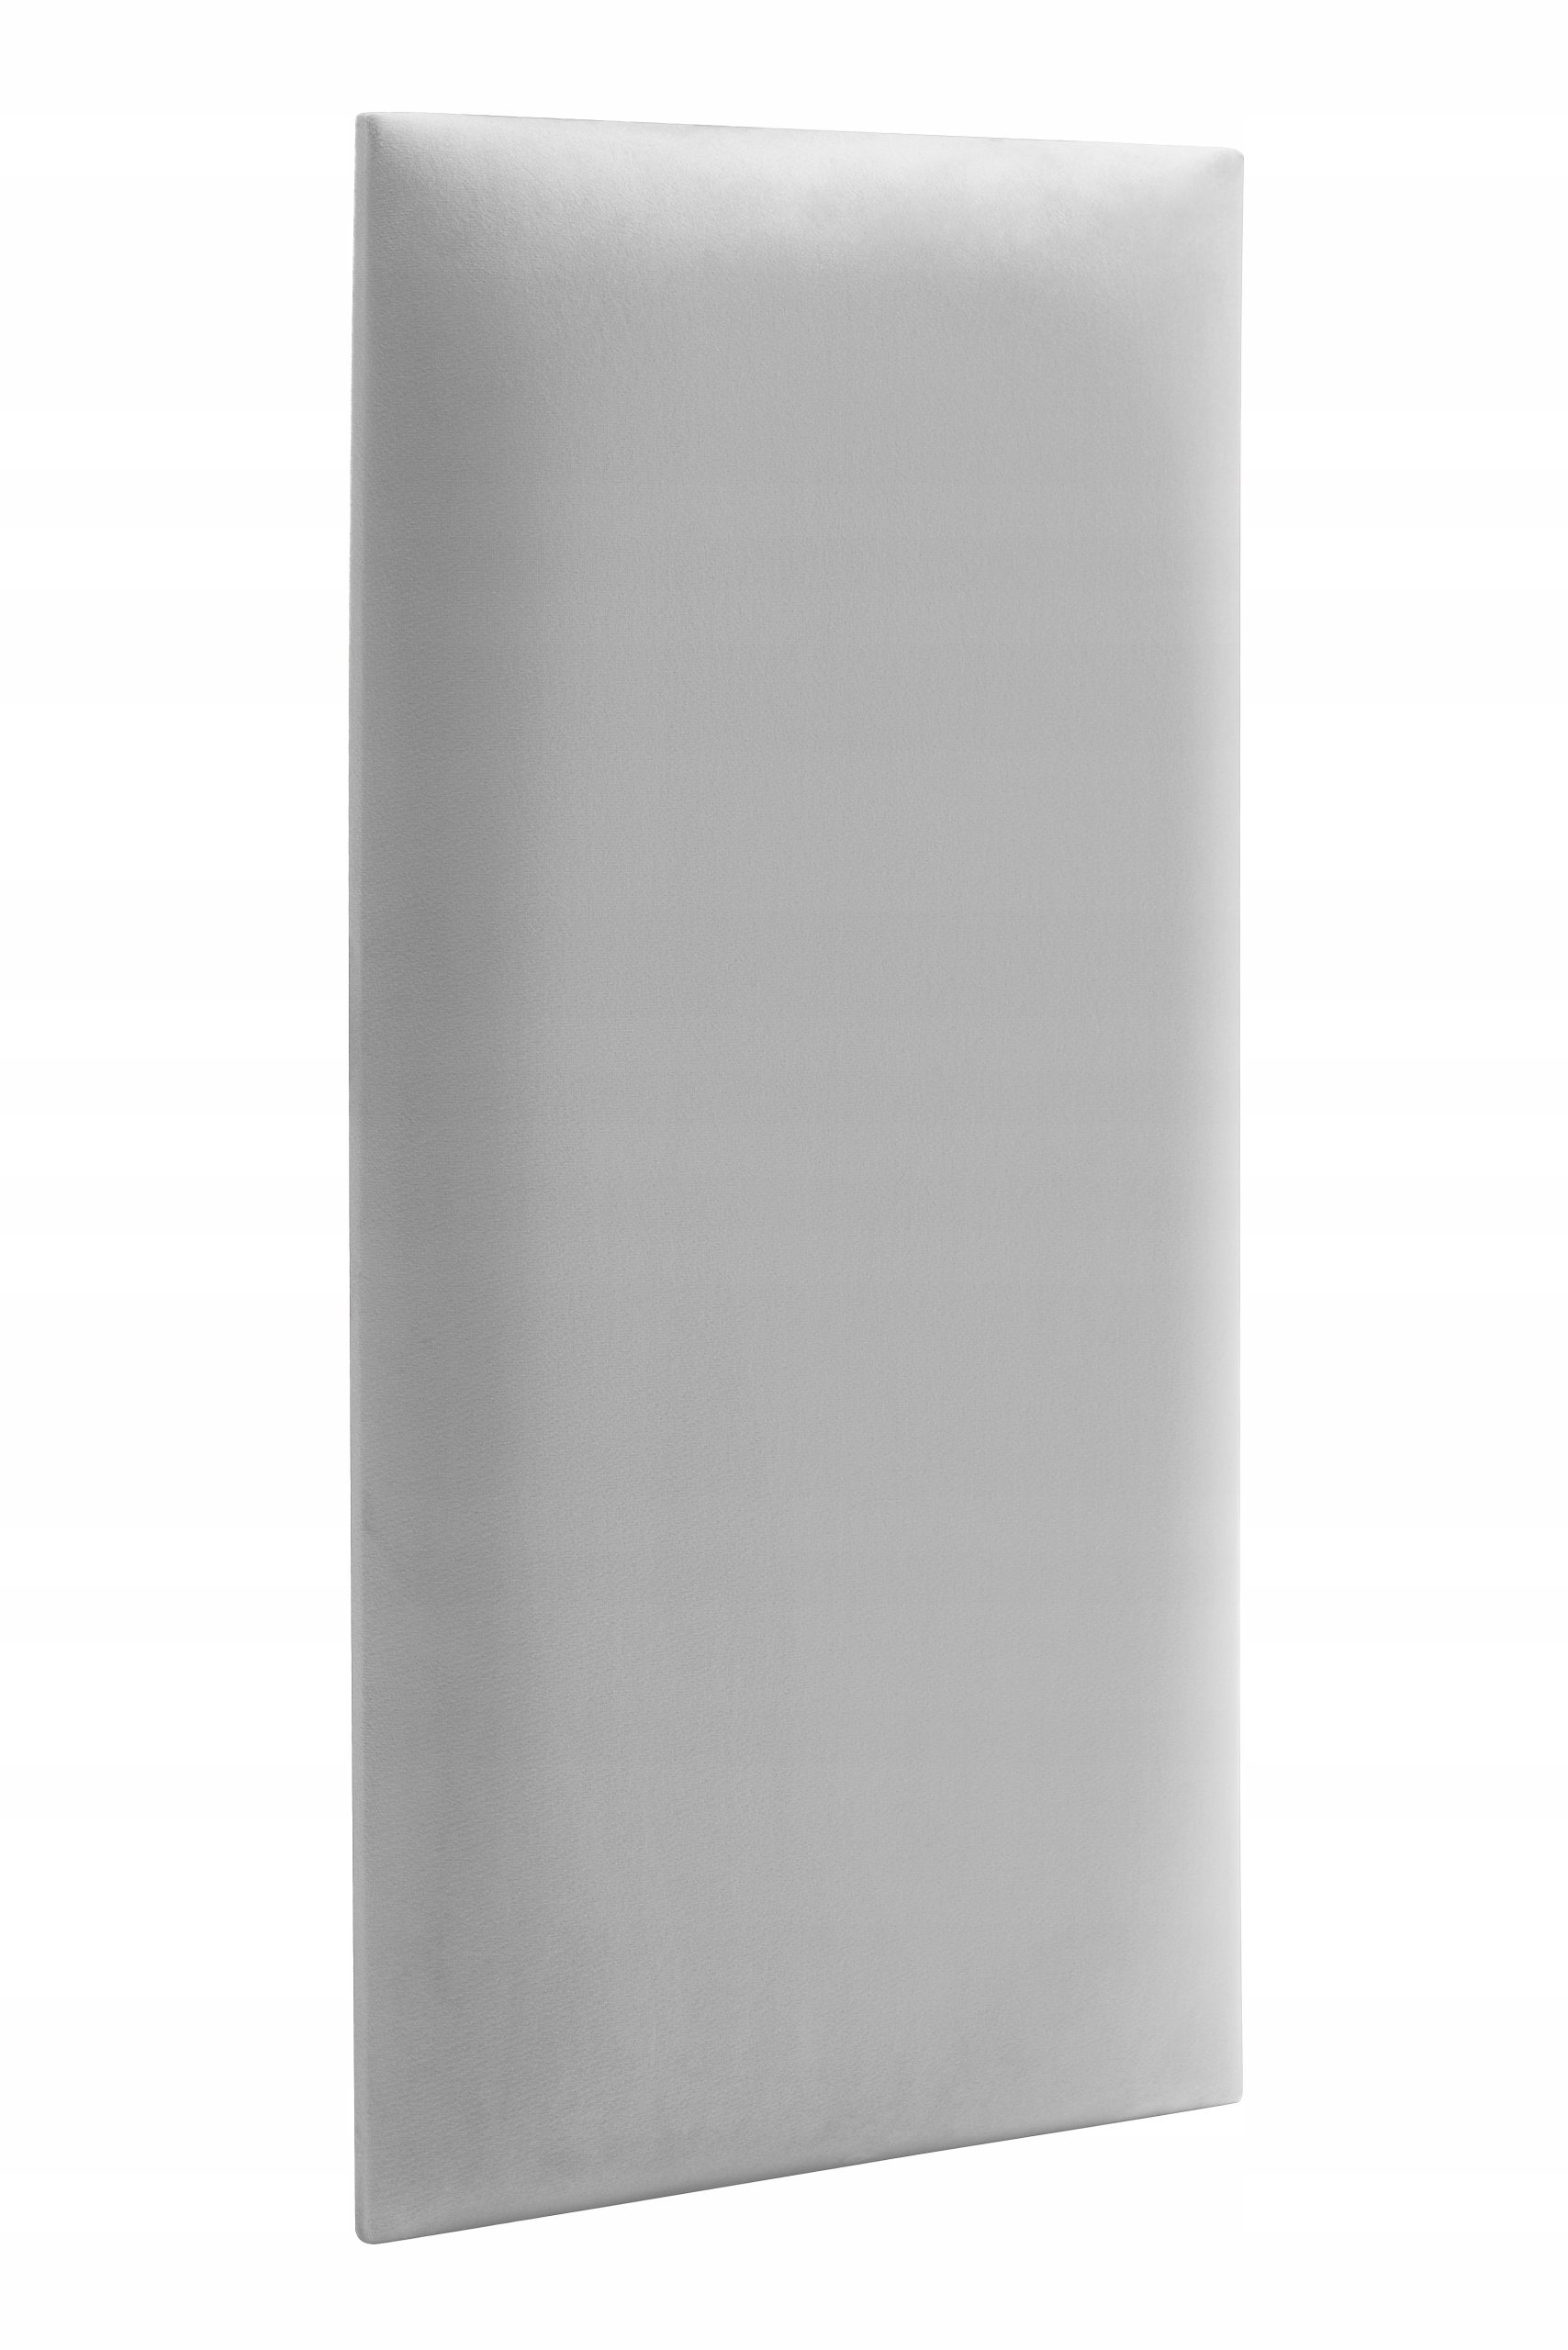 Čalúnený panel Nástenná opierka hlavy mäkká hladká svetlo šedá 60x30 cm